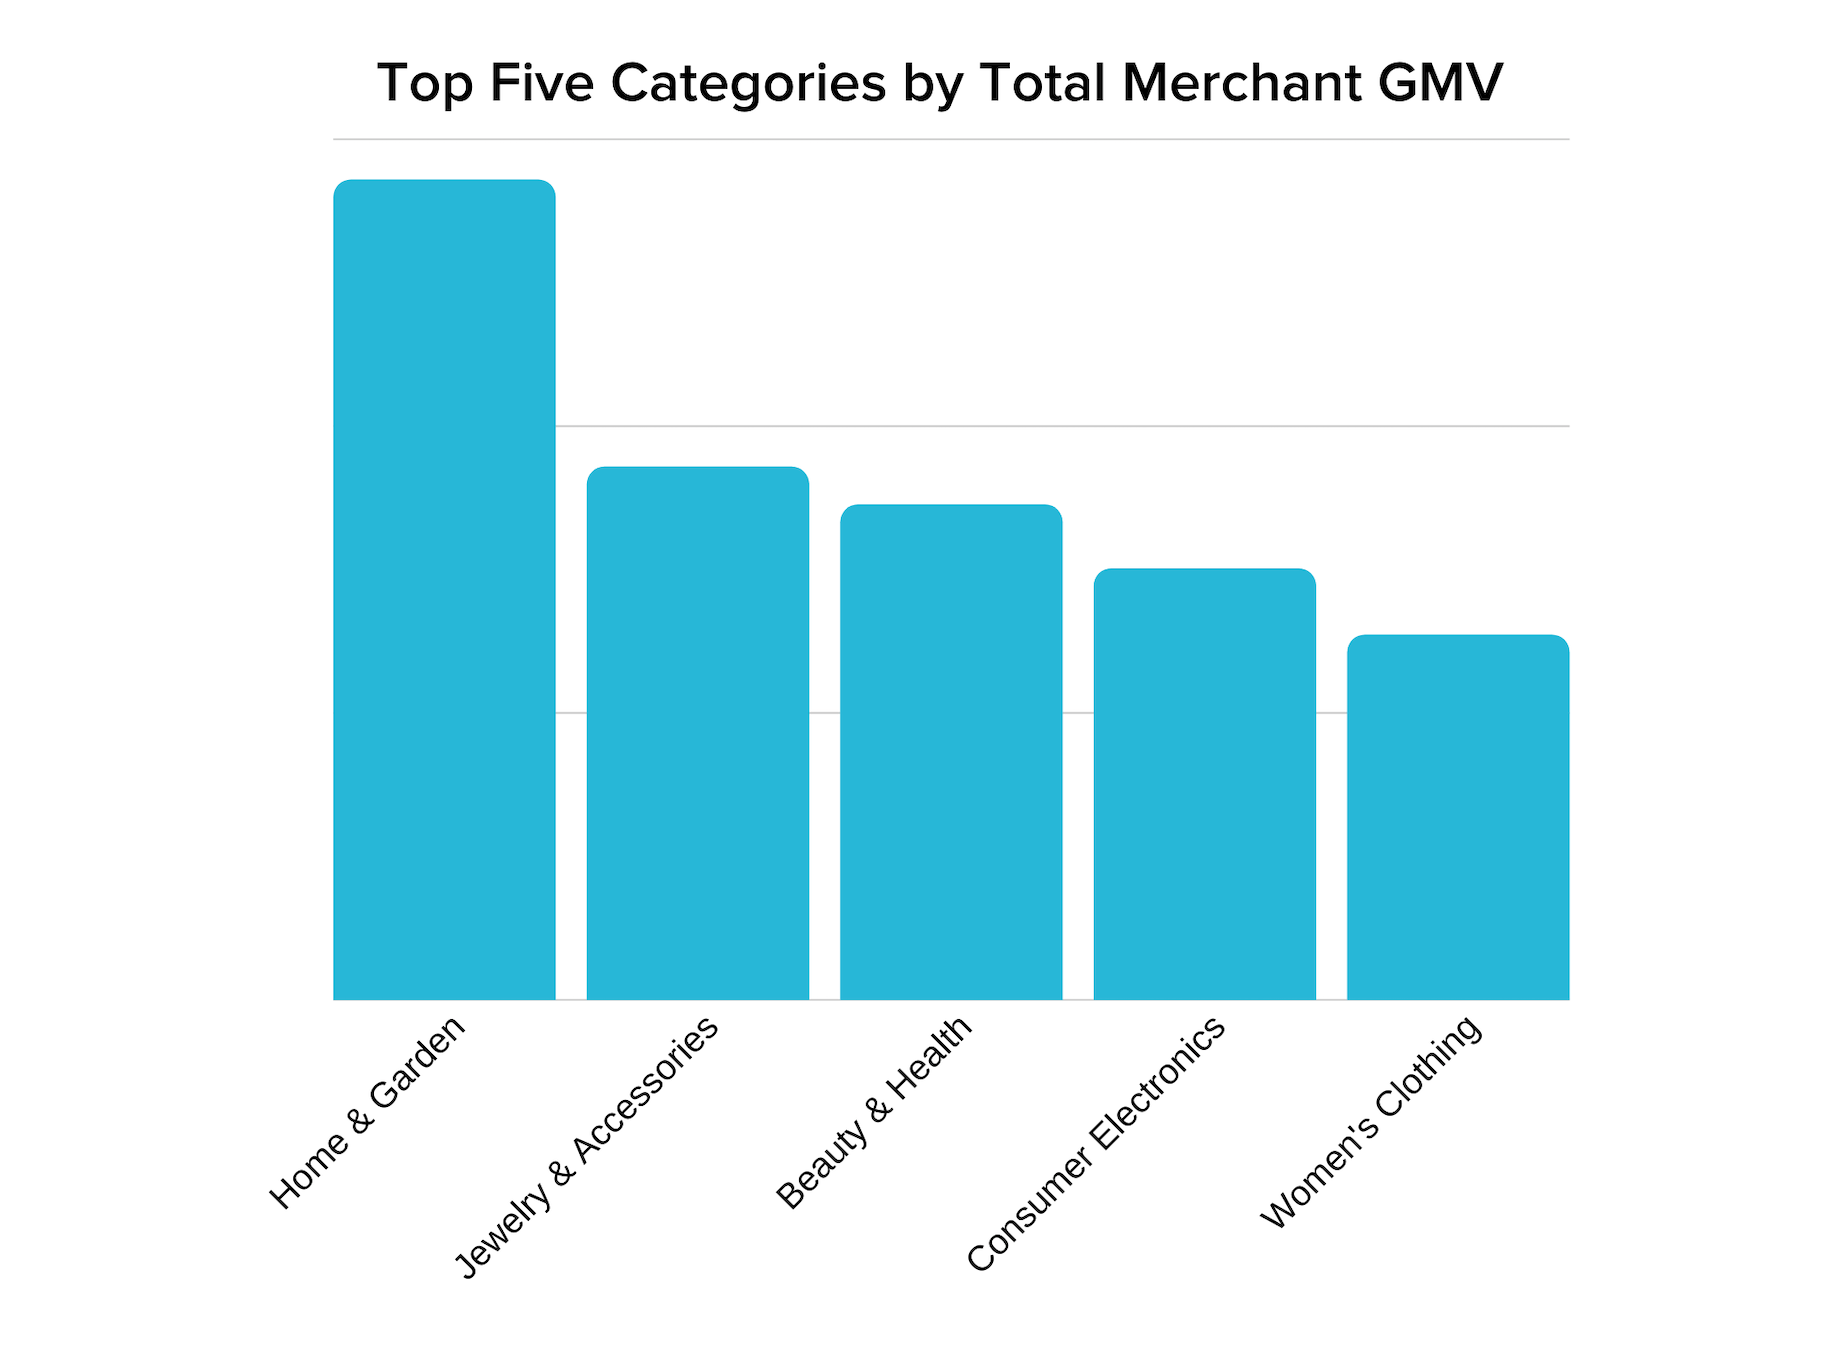 图表显示，家居和花园是商家GMV的最高类别